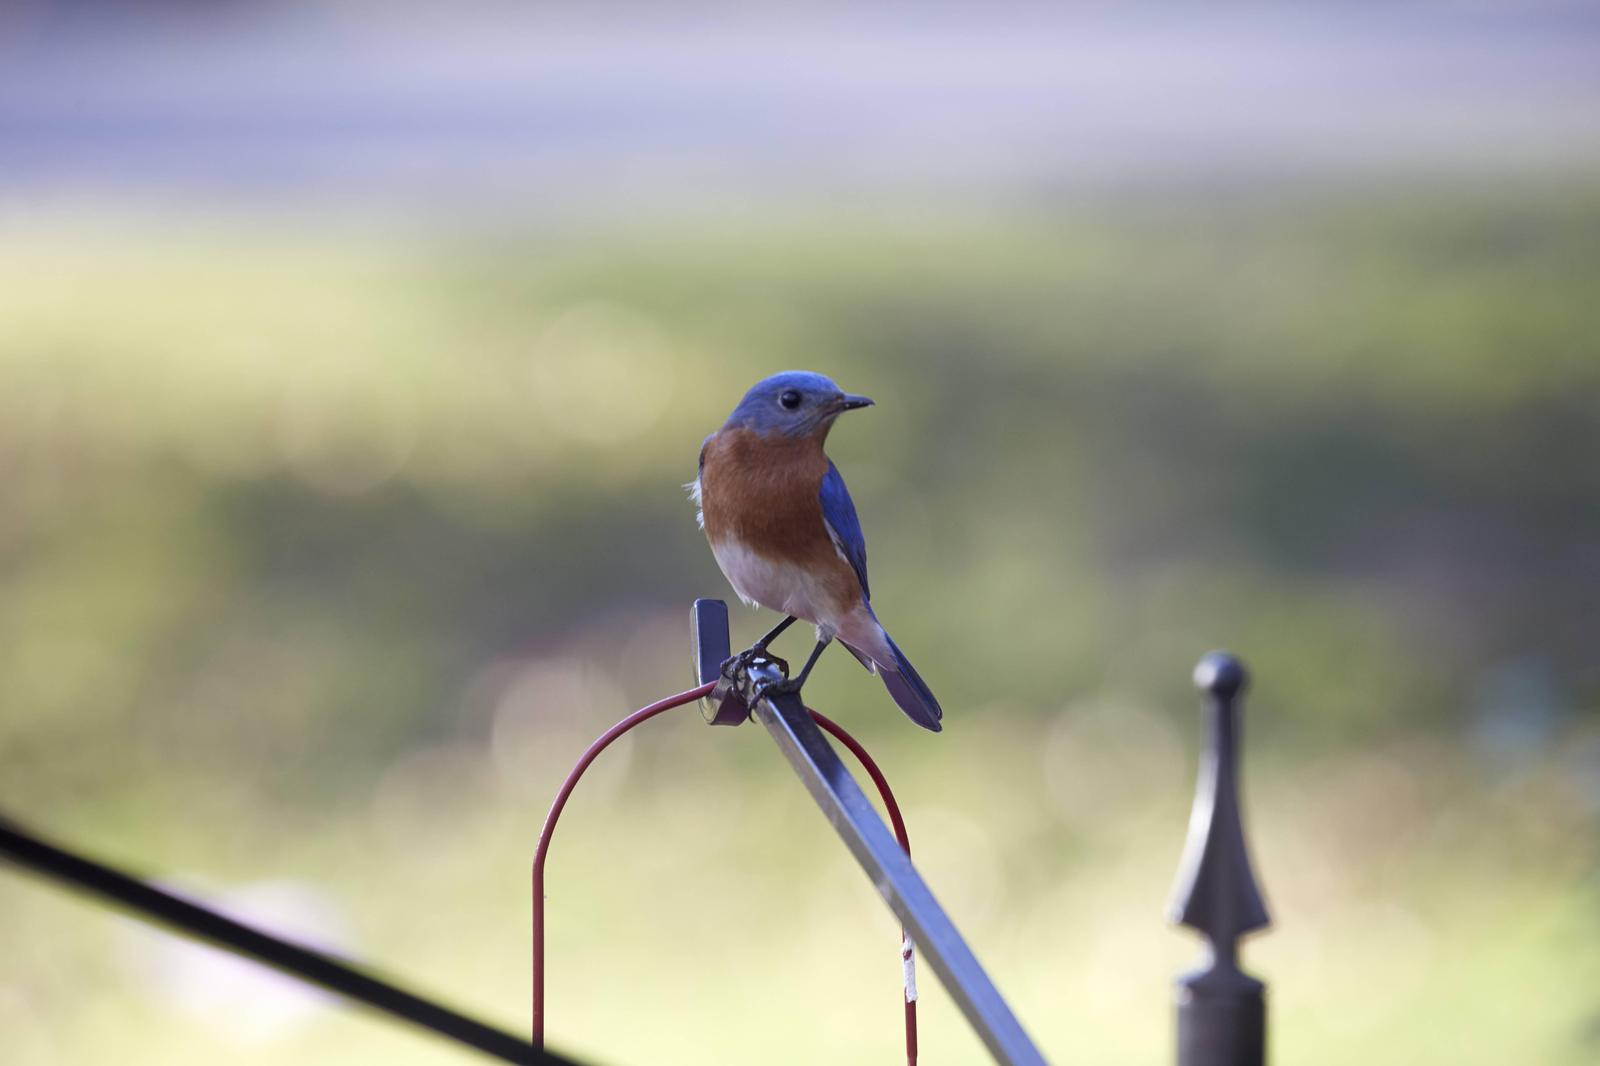 Eastern Bluebird Photo by Eric Eisenstadt